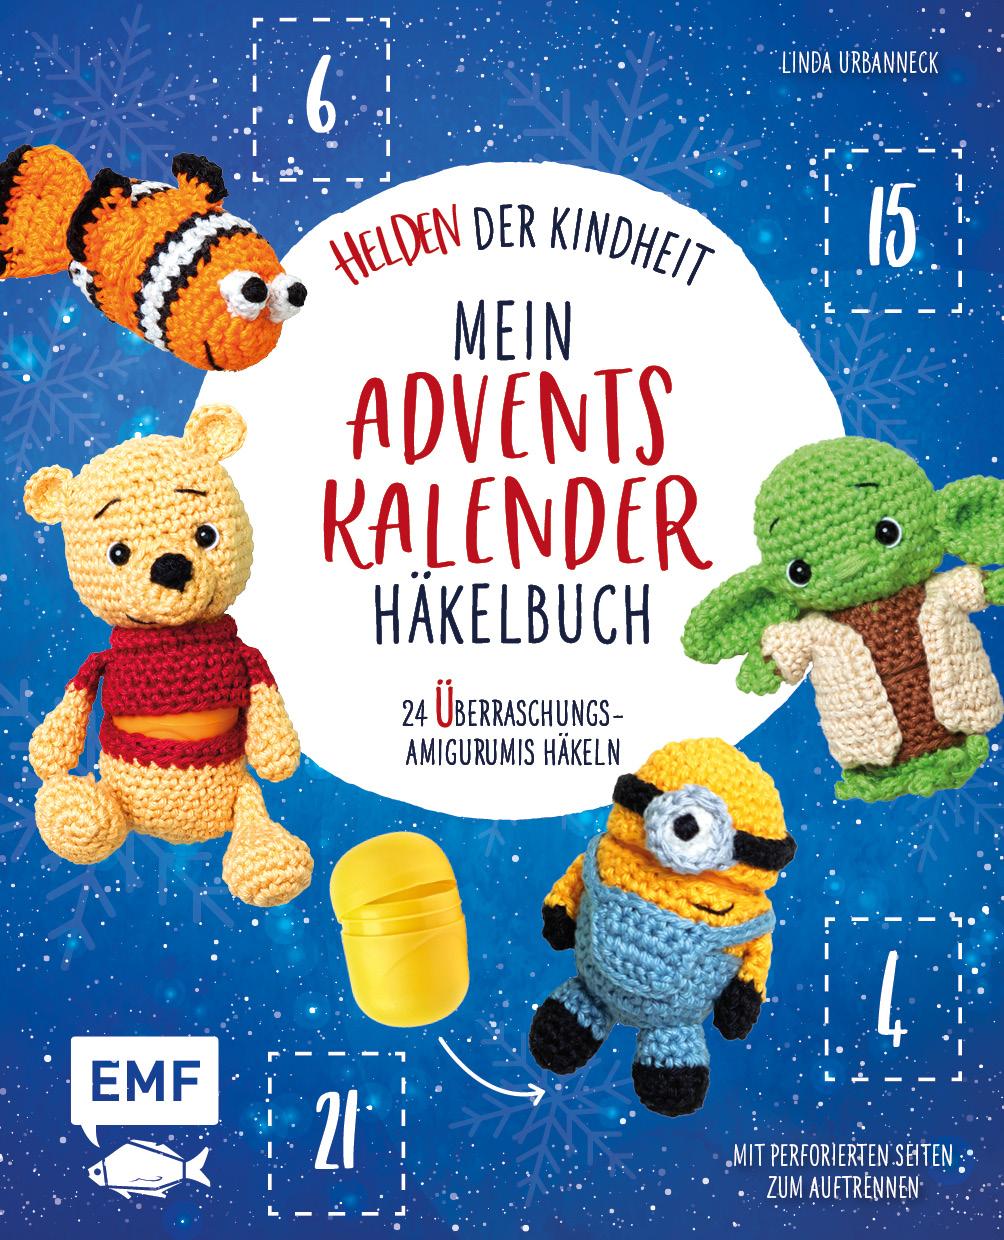 Carte Mein Adventskalender-Häkelbuch: Helden der Kindheit 